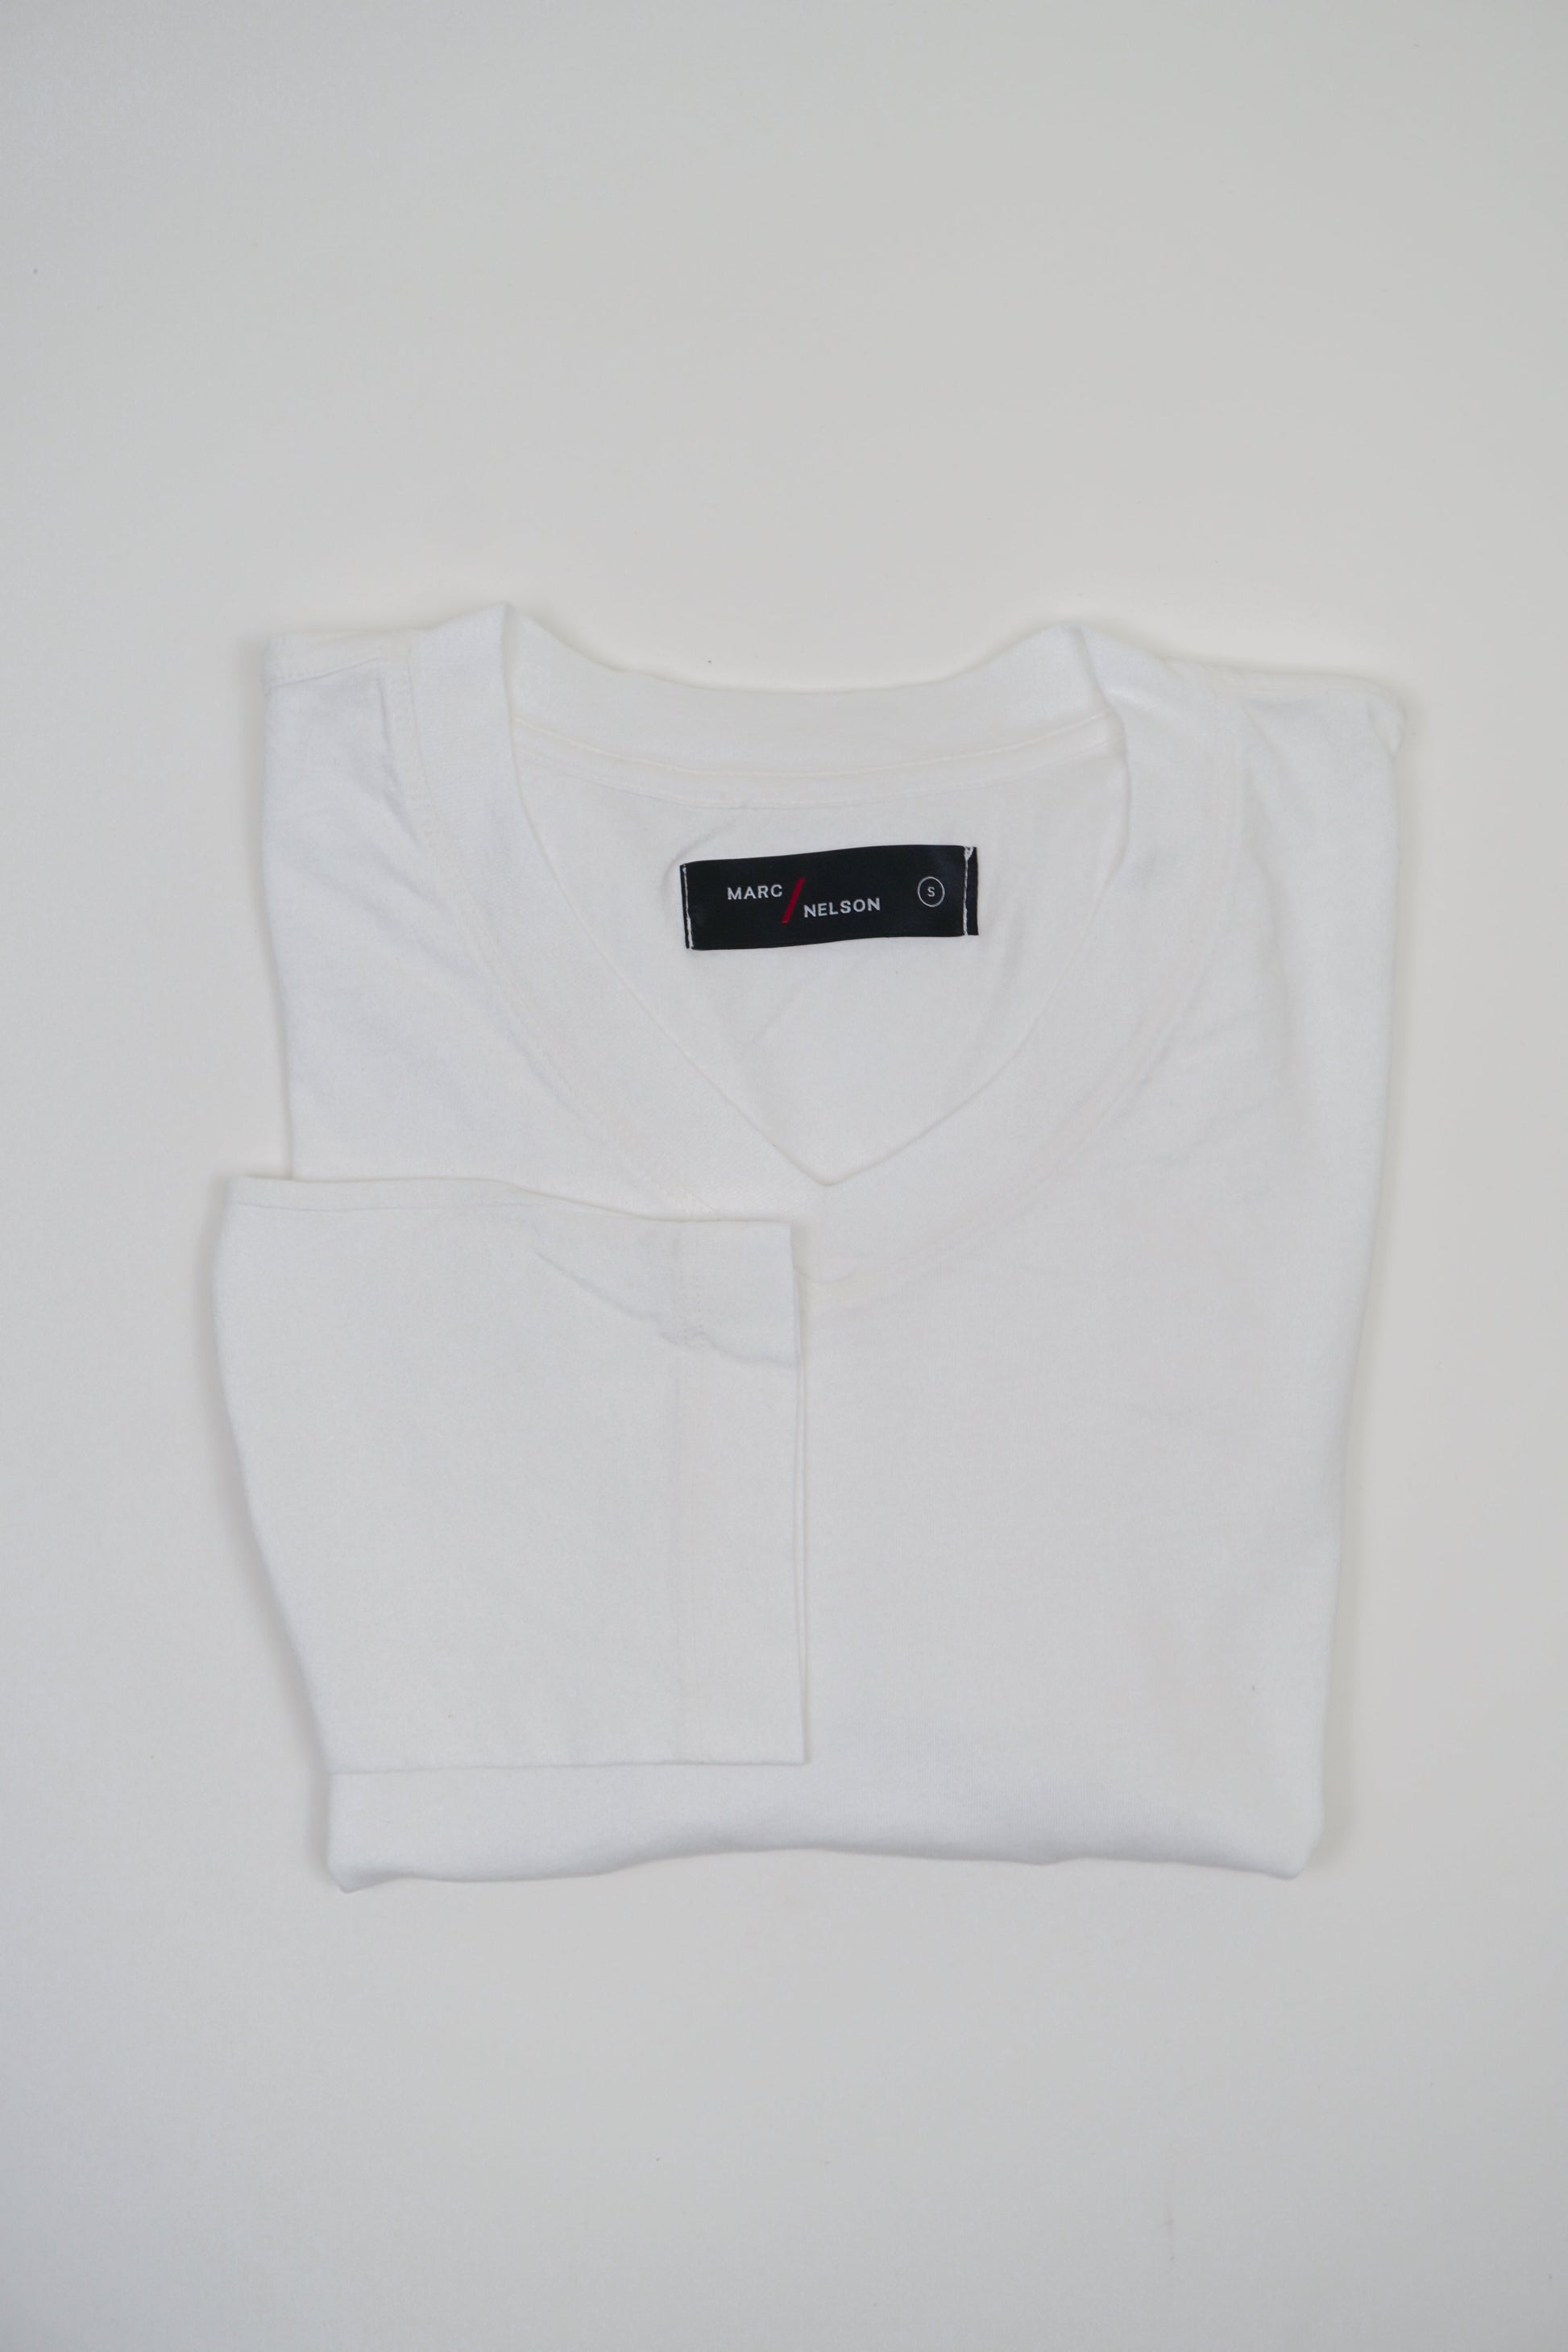 Marc Nelson men's white t-shirt, folded.